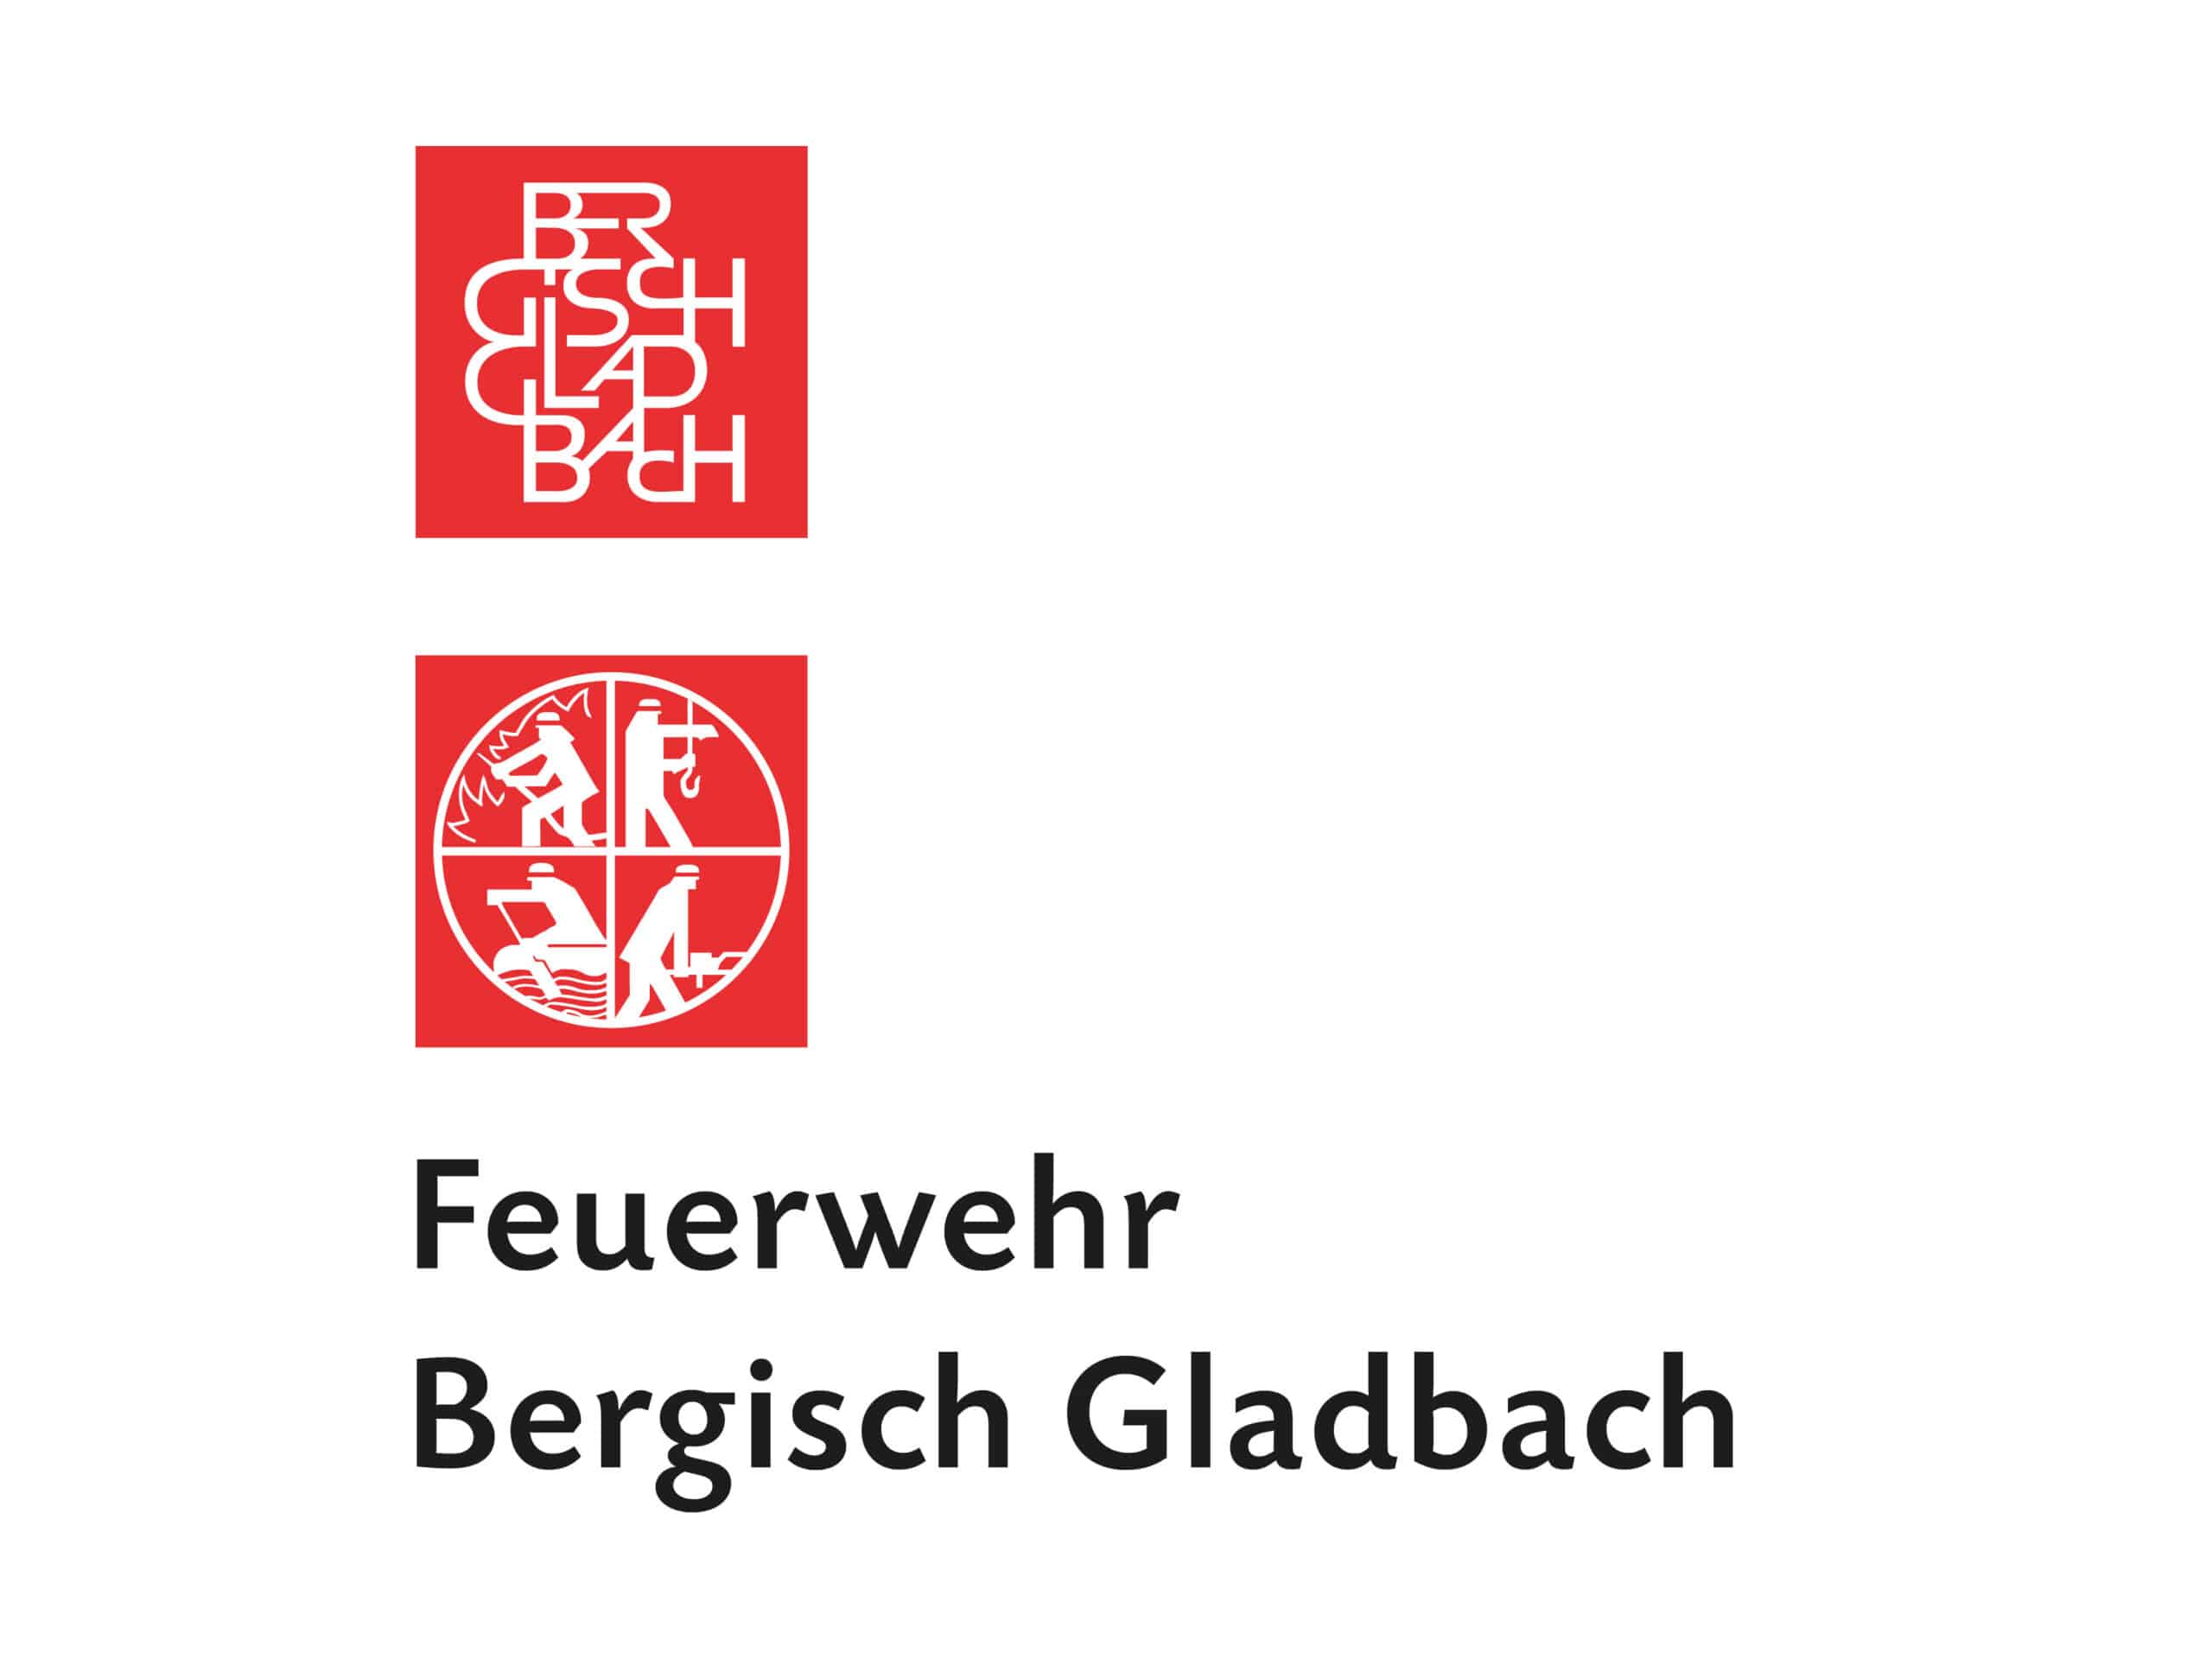 Bergisch Gladbach: Die Feuerwehr Bergisch Gladbach ist die 114. Berufsfeuerwehr in Deutschland